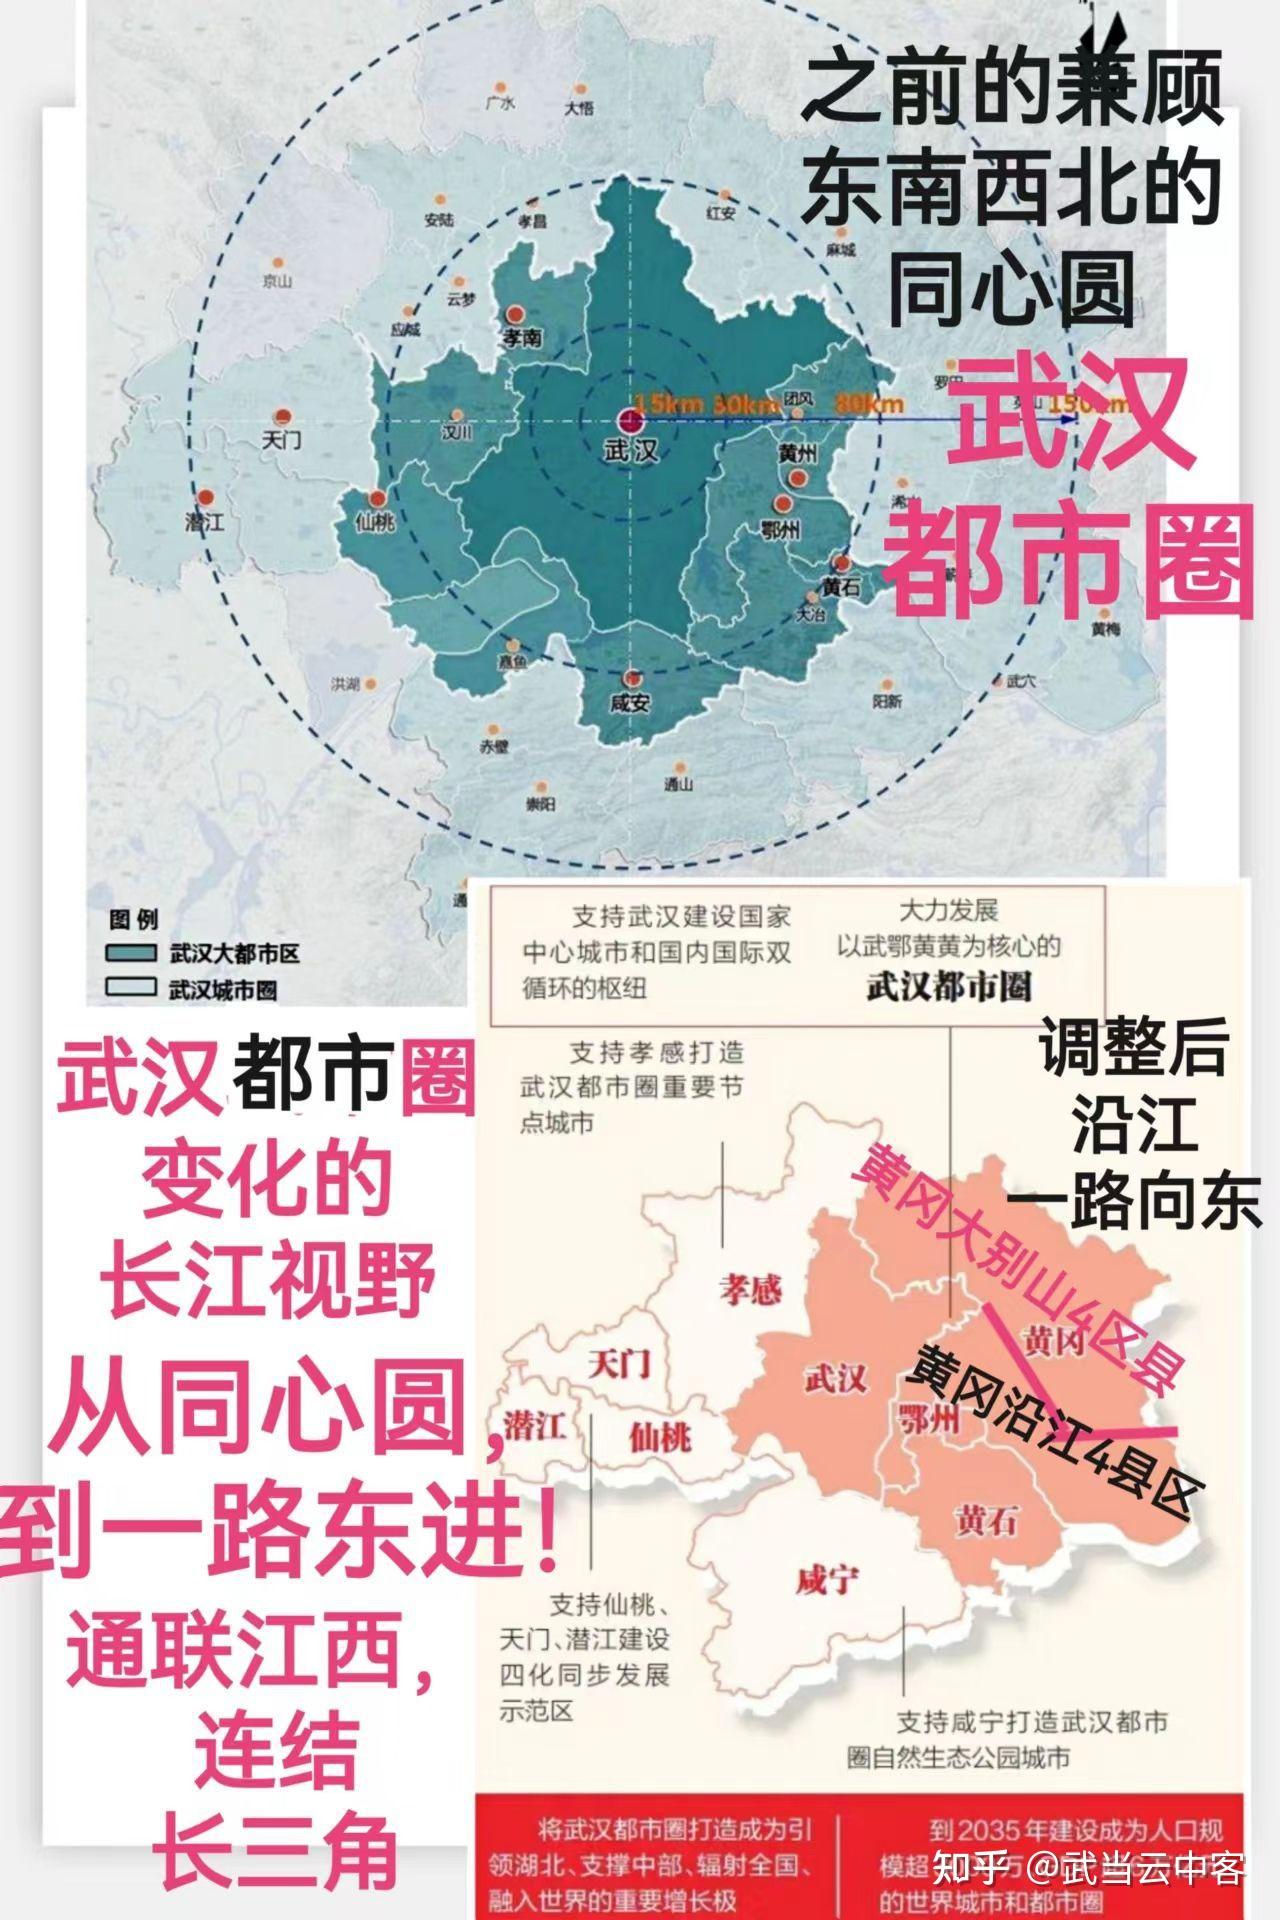 方舆 - 经济地理 - 武汉都市圈发展规划获国家批复，是全国第7个获批的都市圈规划。 - Powered by phpwind